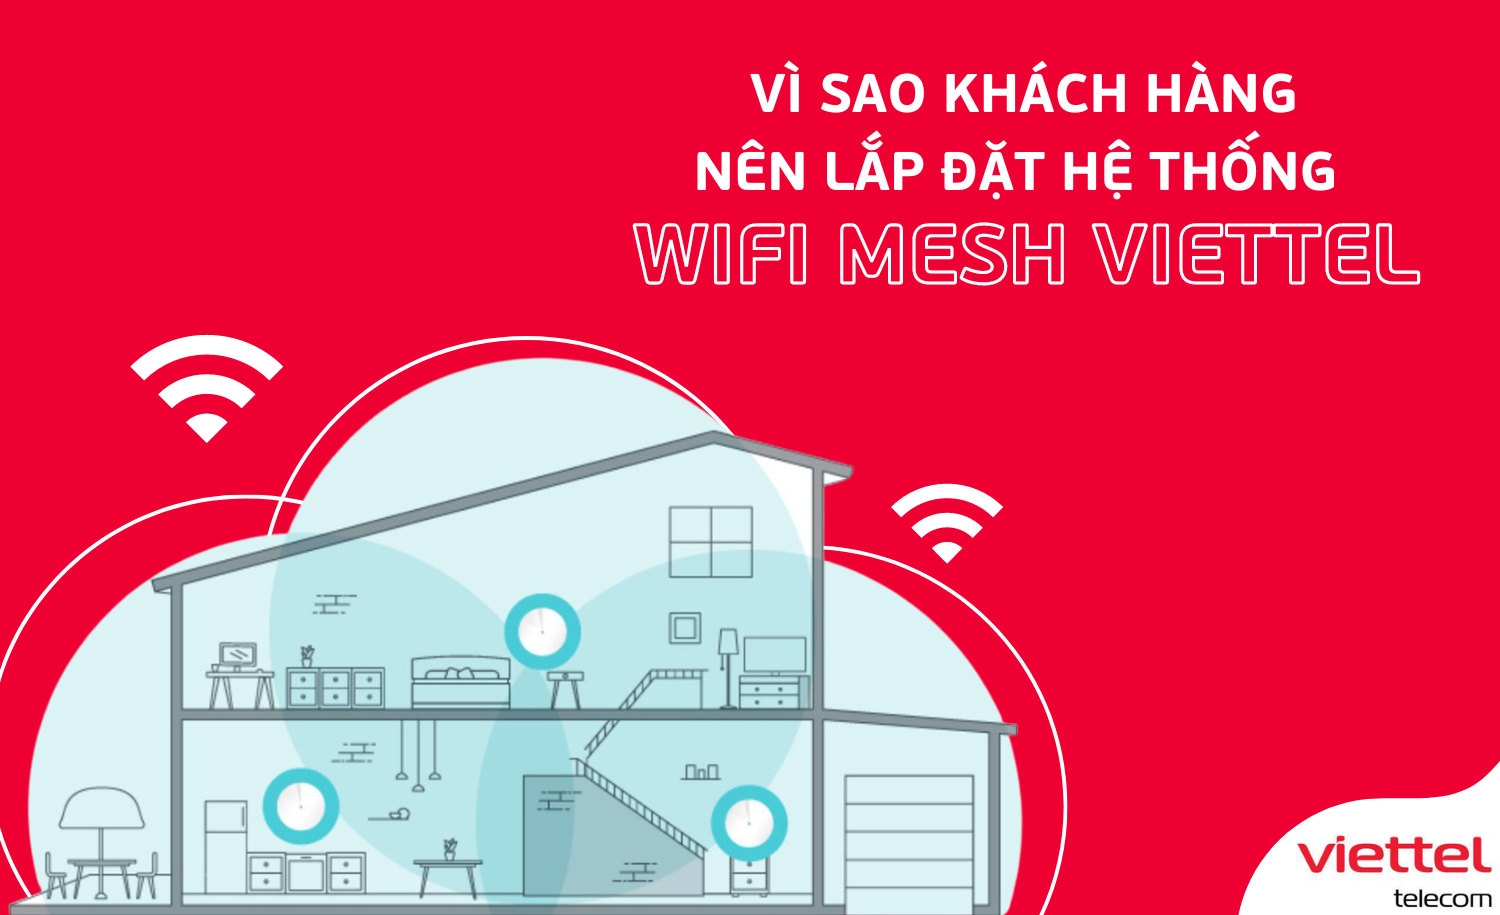 Viettel Telecom là một trong những nhà cung cấp dịch vụ viễn thông hàng đầu tại Việt Nam, luôn cung cấp những sản phẩm và dịch vụ tốt nhất cho người dùng. Hãy xem hình ảnh liên quan đến Viettel Telecom để tìm hiểu thêm về các sản phẩm và dịch vụ của công ty, đồng thời khám phá những ưu đãi và khuyến mãi hấp dẫn từ Viettel.